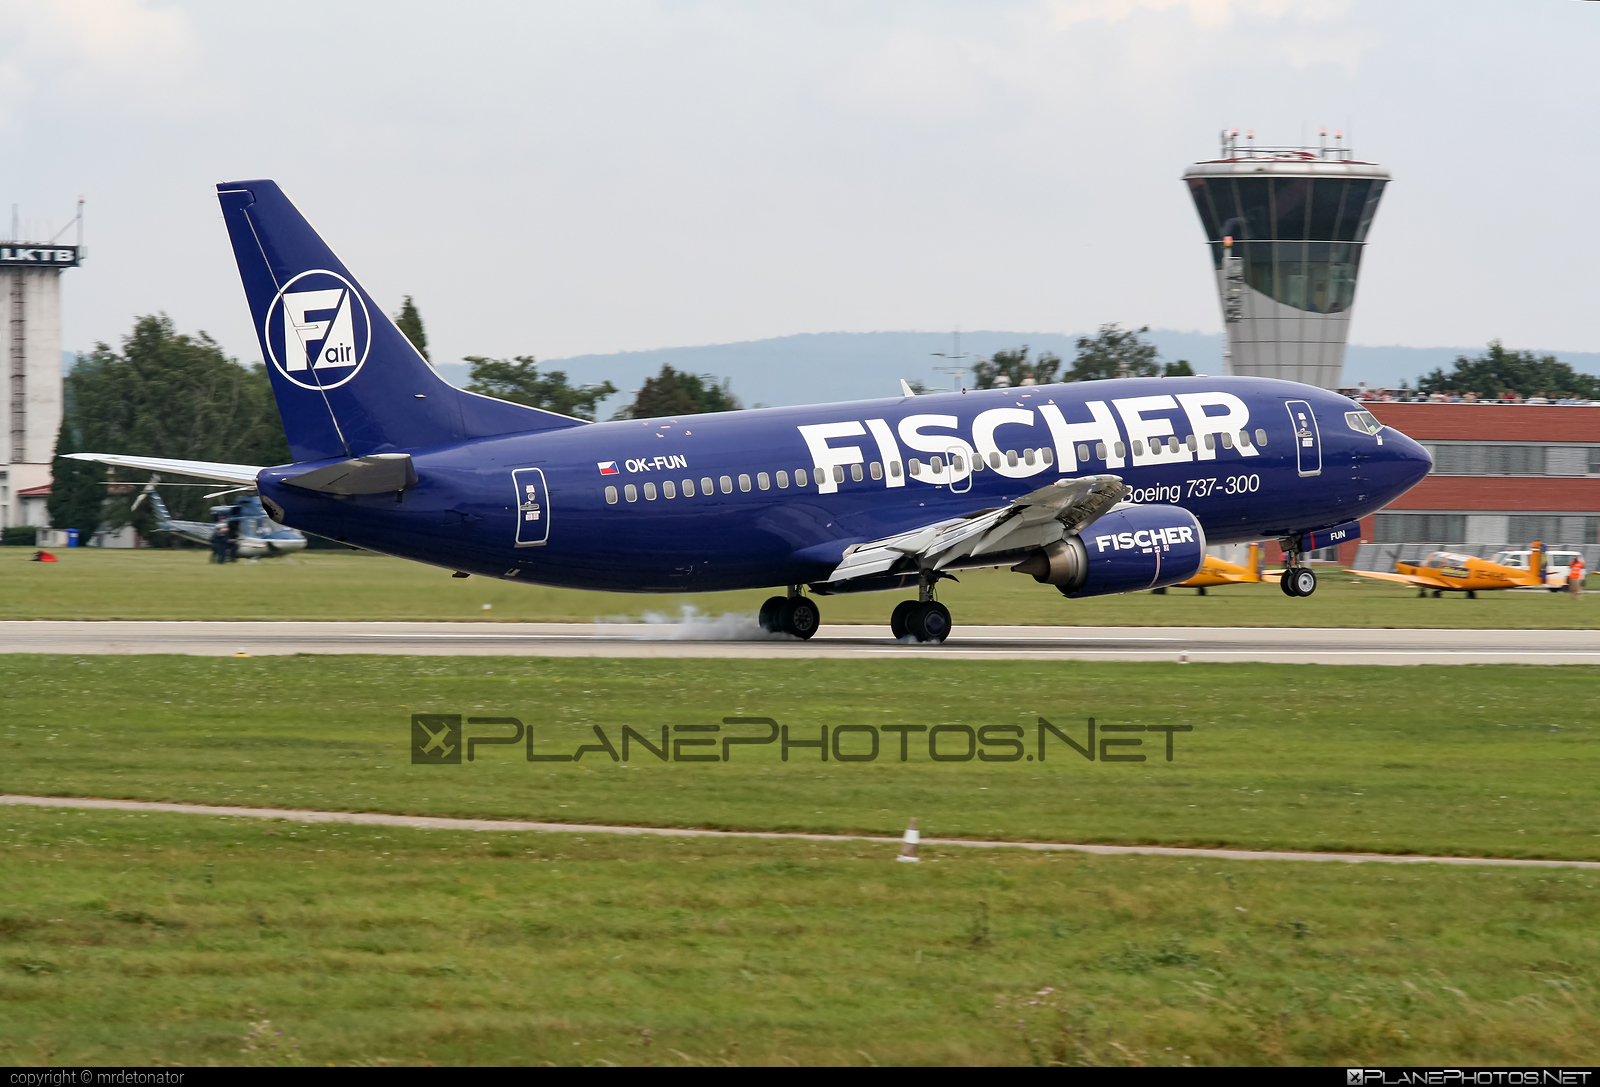 Boeing 737-300 - OK-FUN operated by Fischer Air #b737 #boeing #boeing737